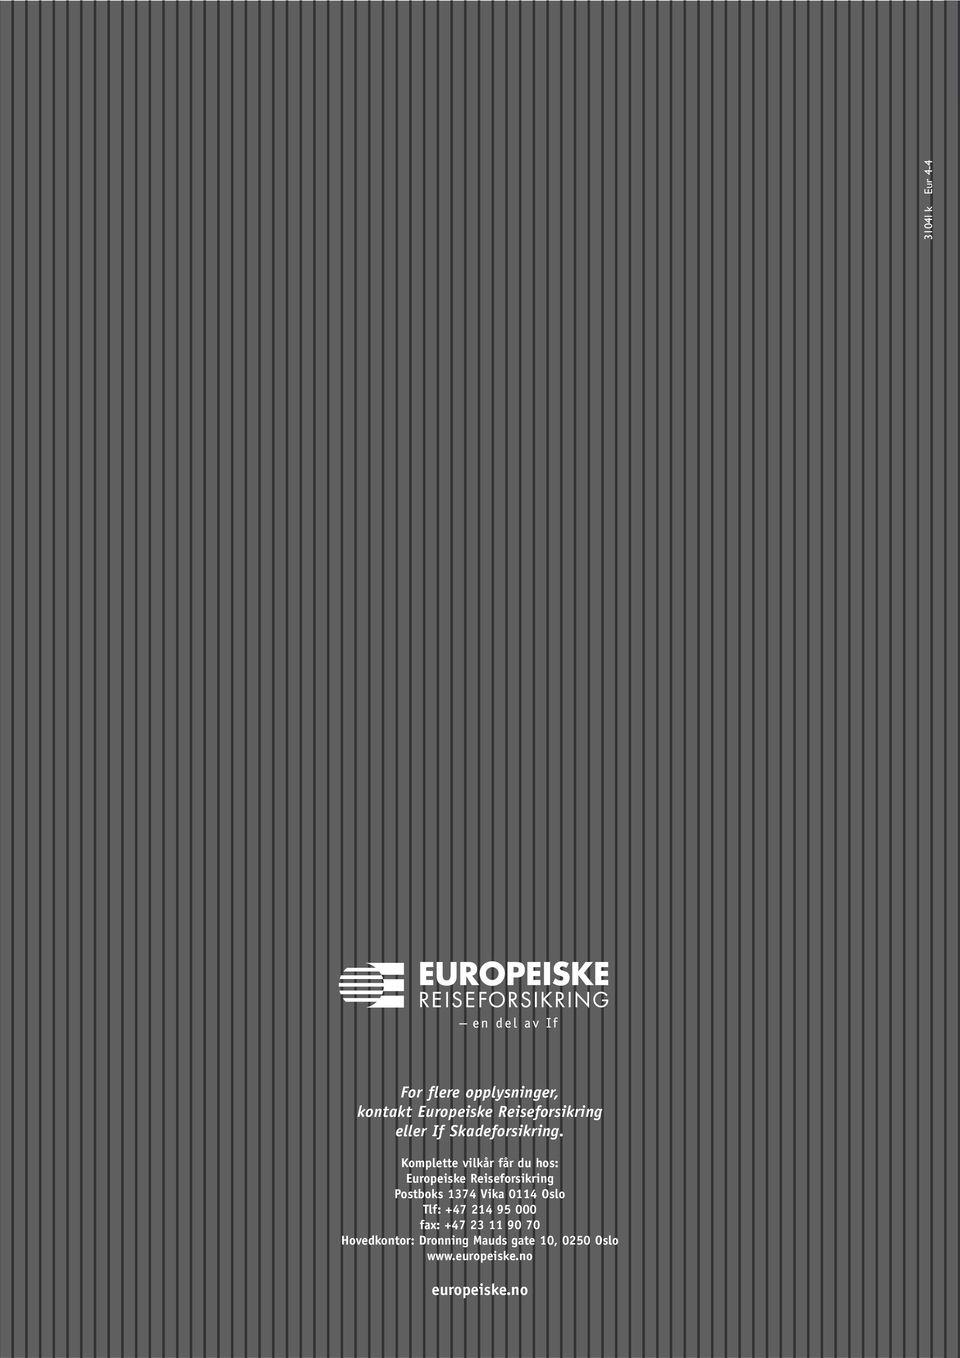 Komplette vilkår får du hos: Europeiske Reiseforsikring Postboks 1374 Vika